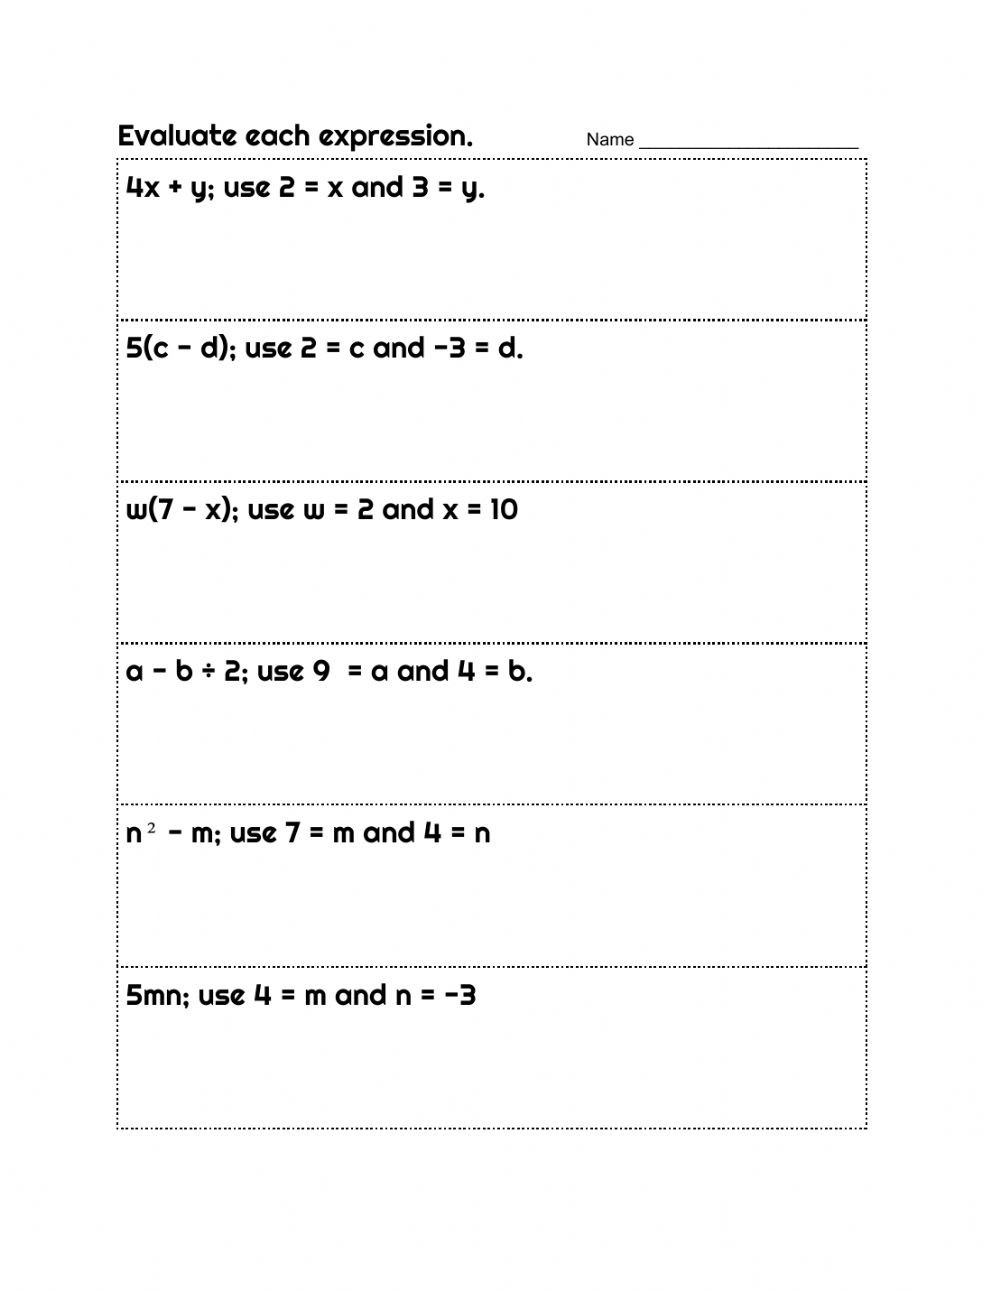 Evaluating Algebraic Expressions Worksheet Evaluating Algebraic Expressions Bining Like Terms and